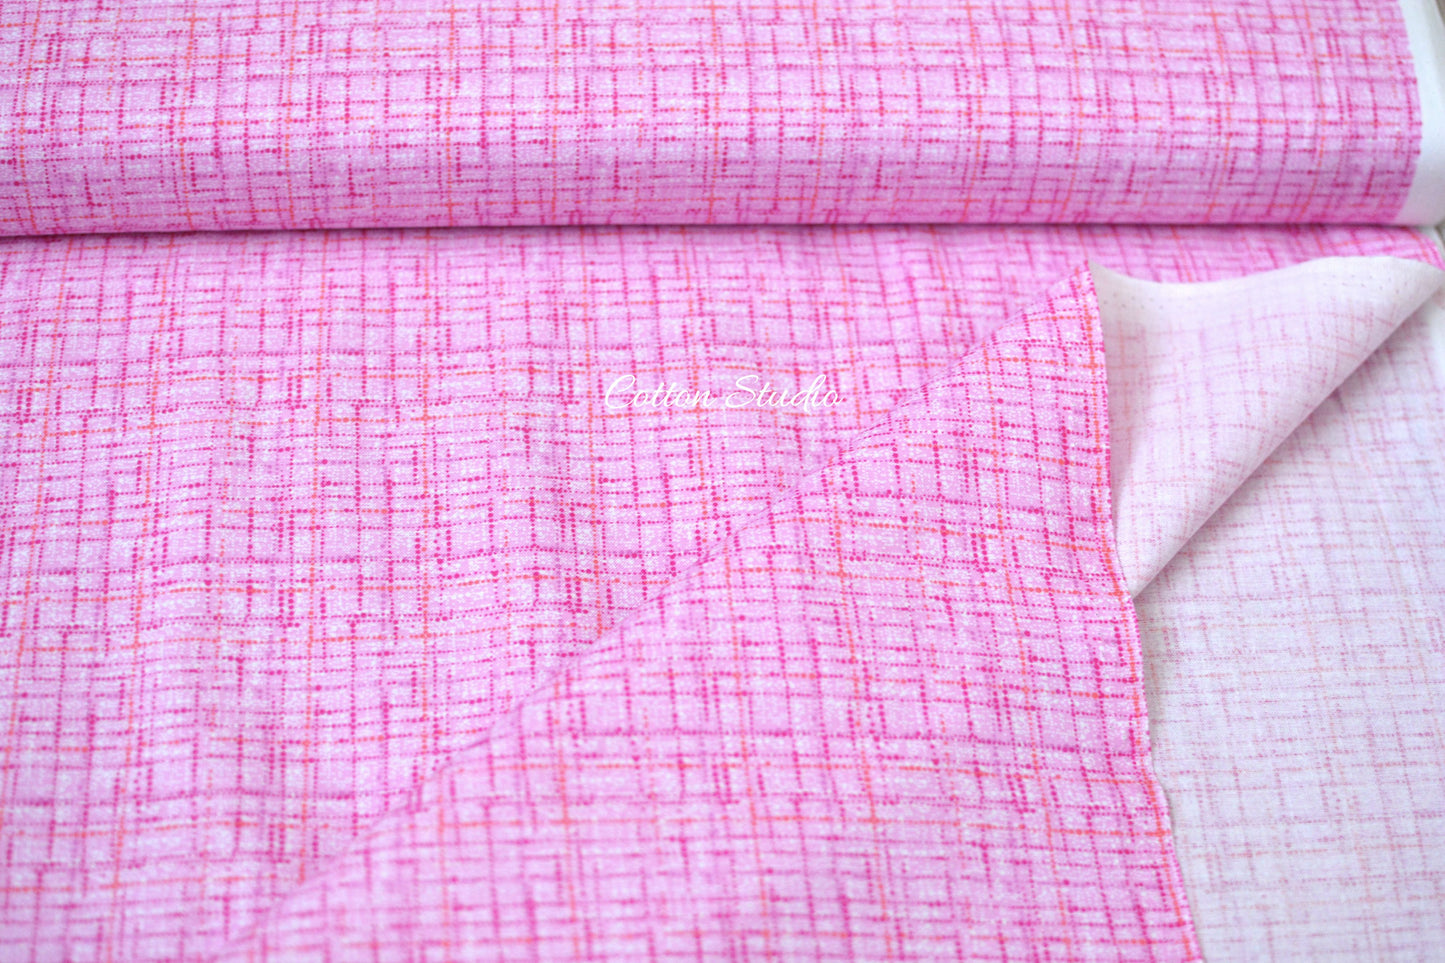 COCO Blush Michael Miller Fabric Blend Texture CX9316-BLUS-D